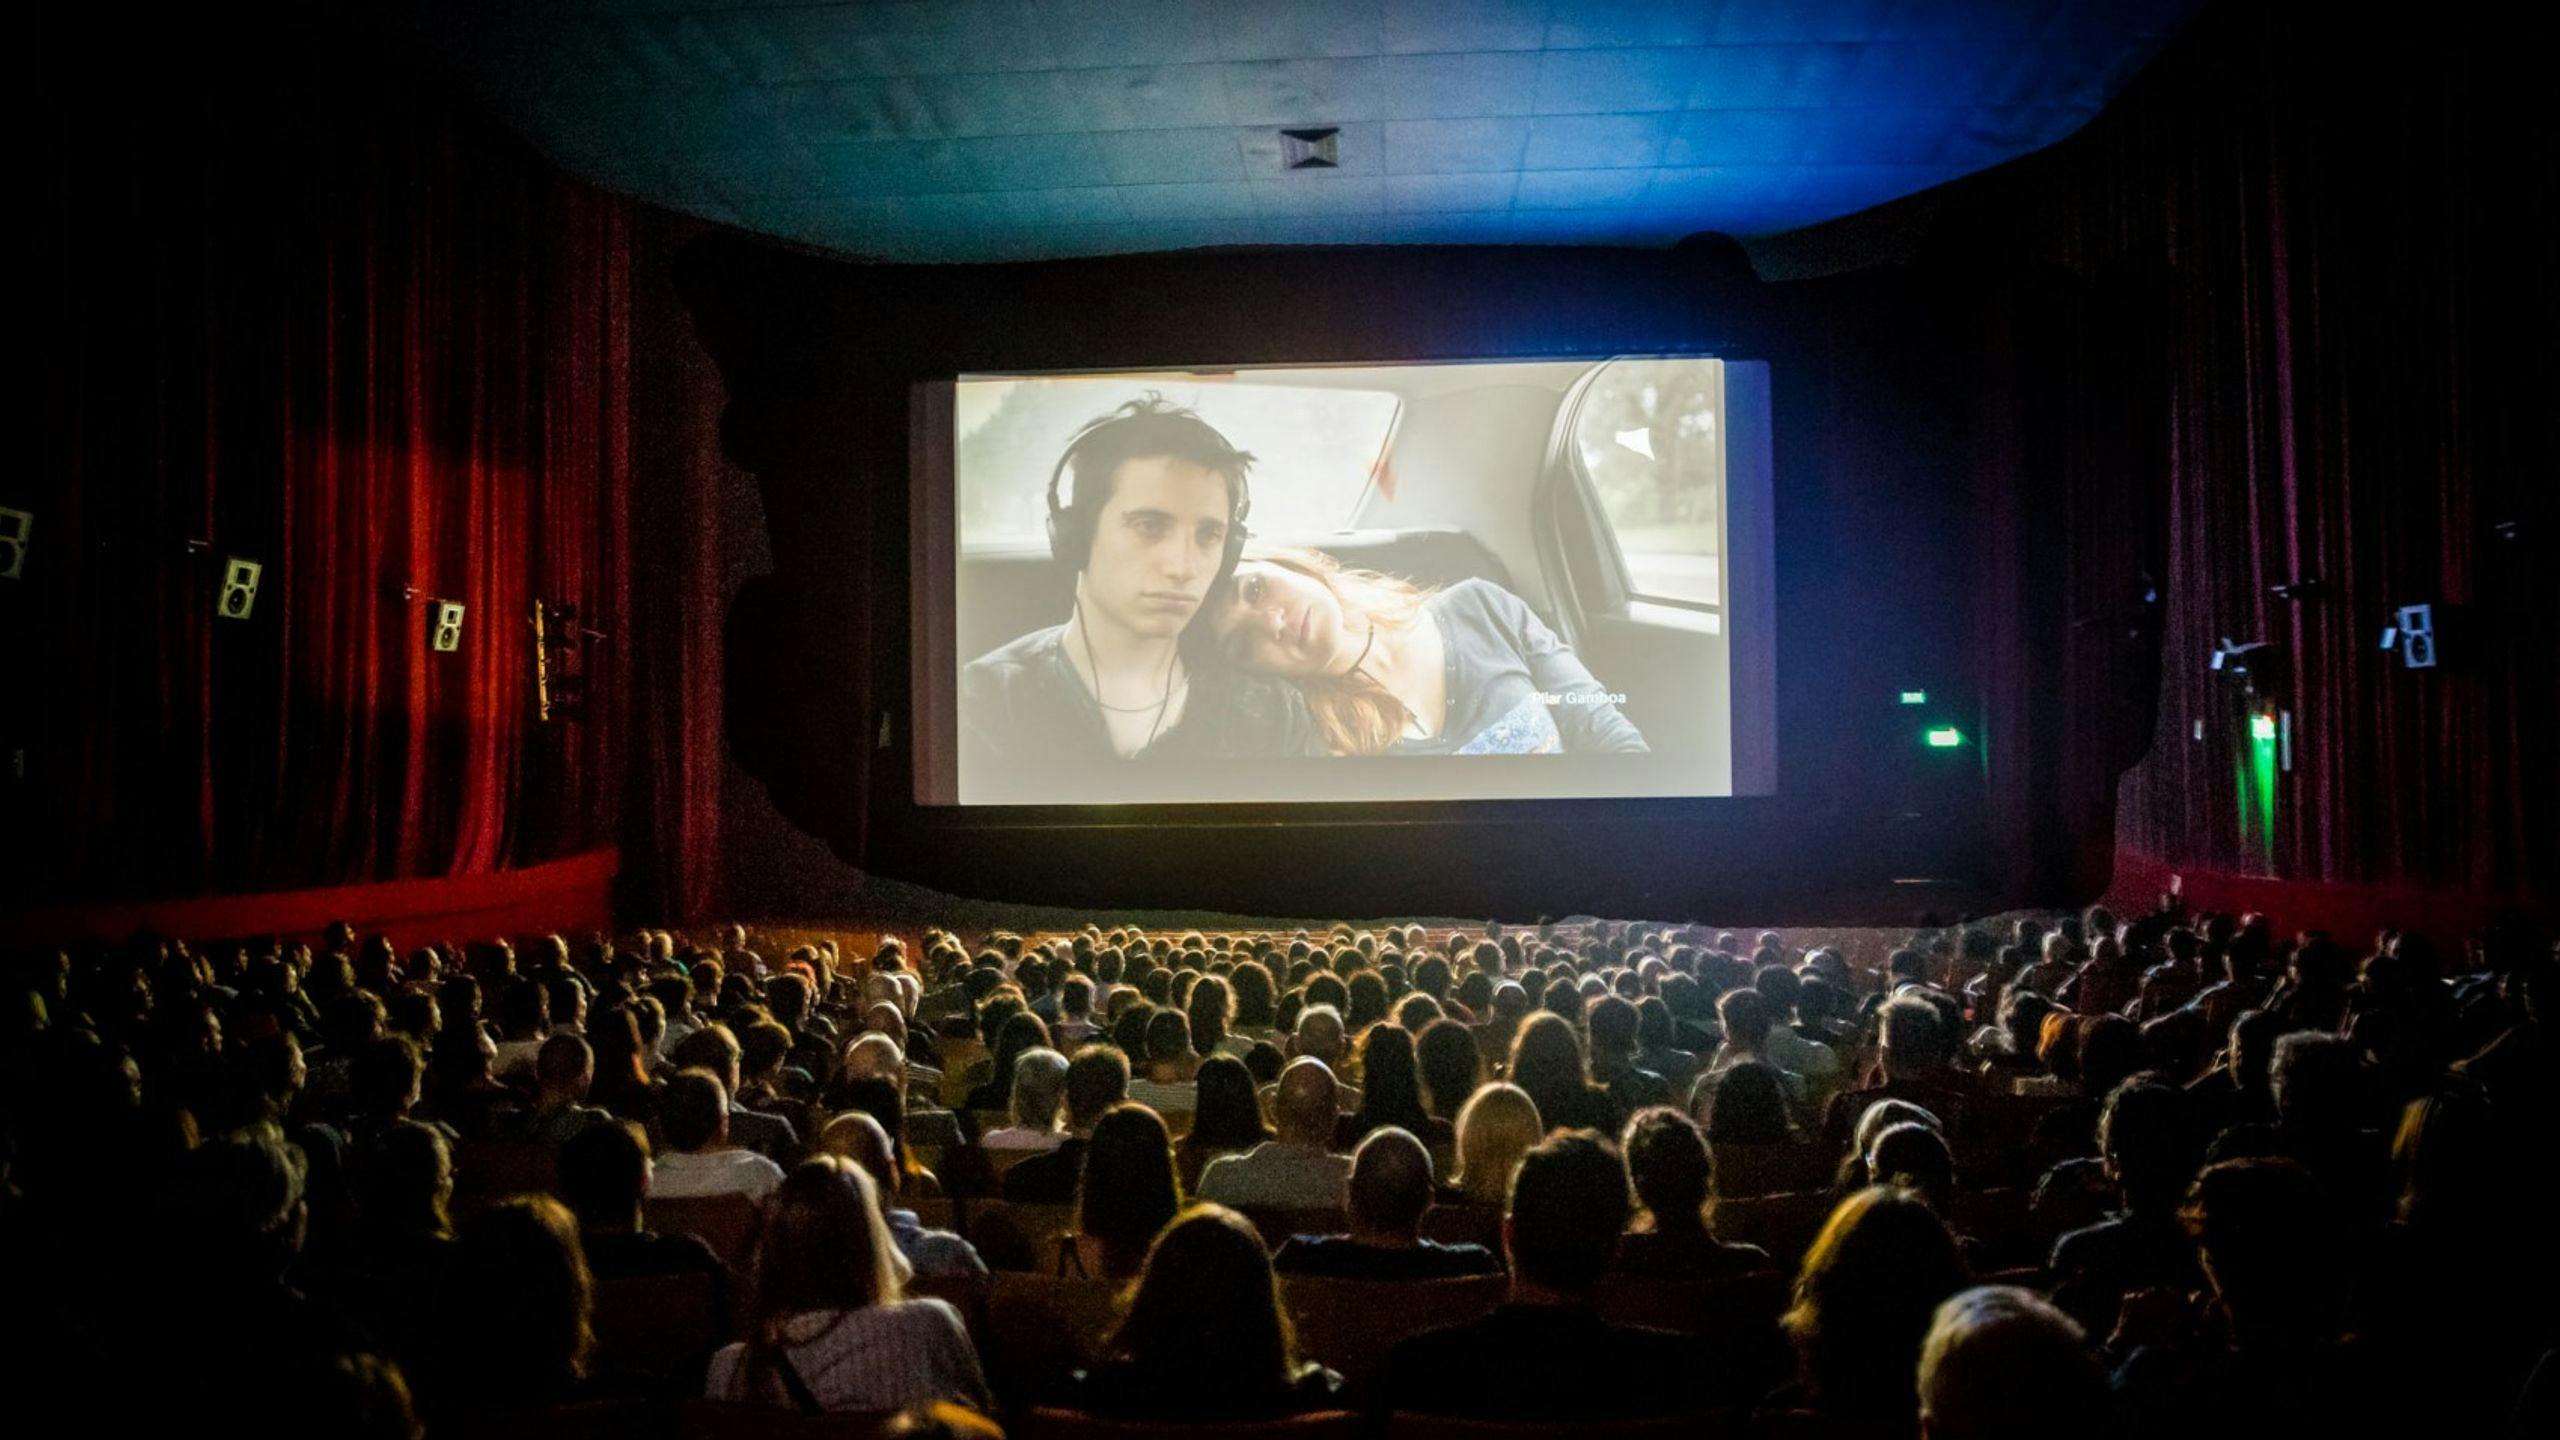 Cine de Buenos Aires durante la inauguración del Bafici.